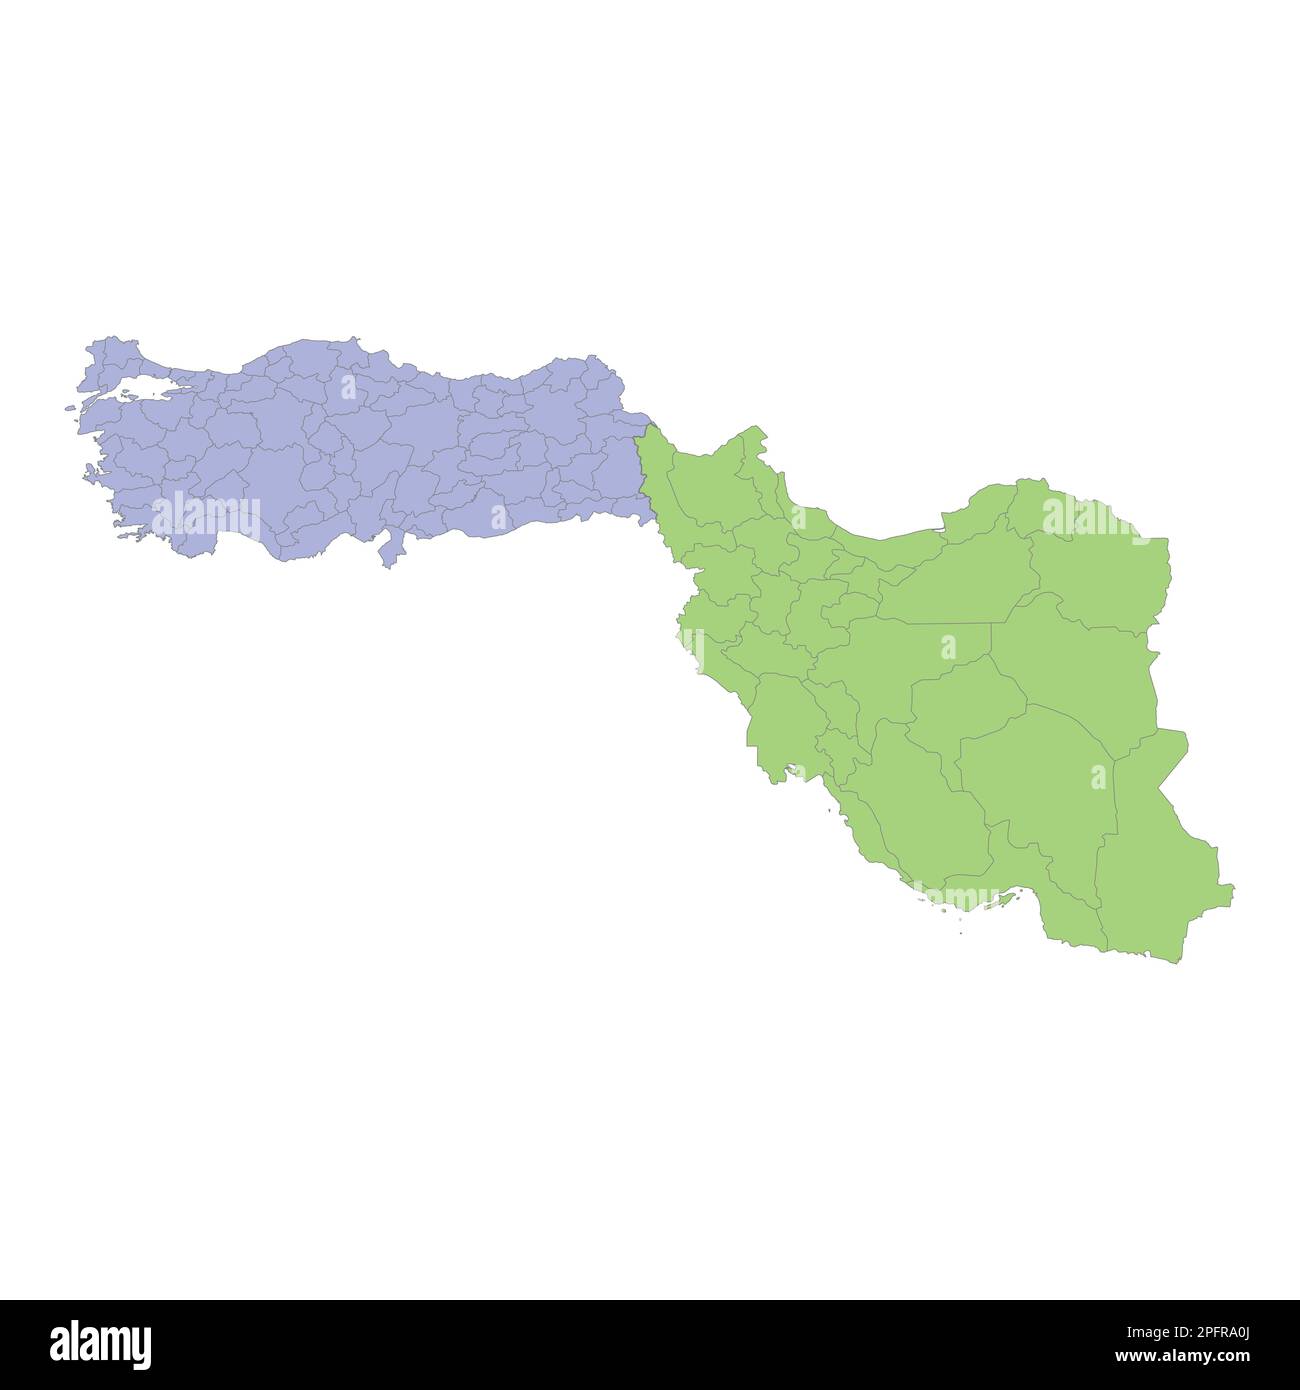 Mappa politica di alta qualità della Turchia e dell'Iran con i confini delle regioni o delle province. Illustrazione vettoriale Illustrazione Vettoriale